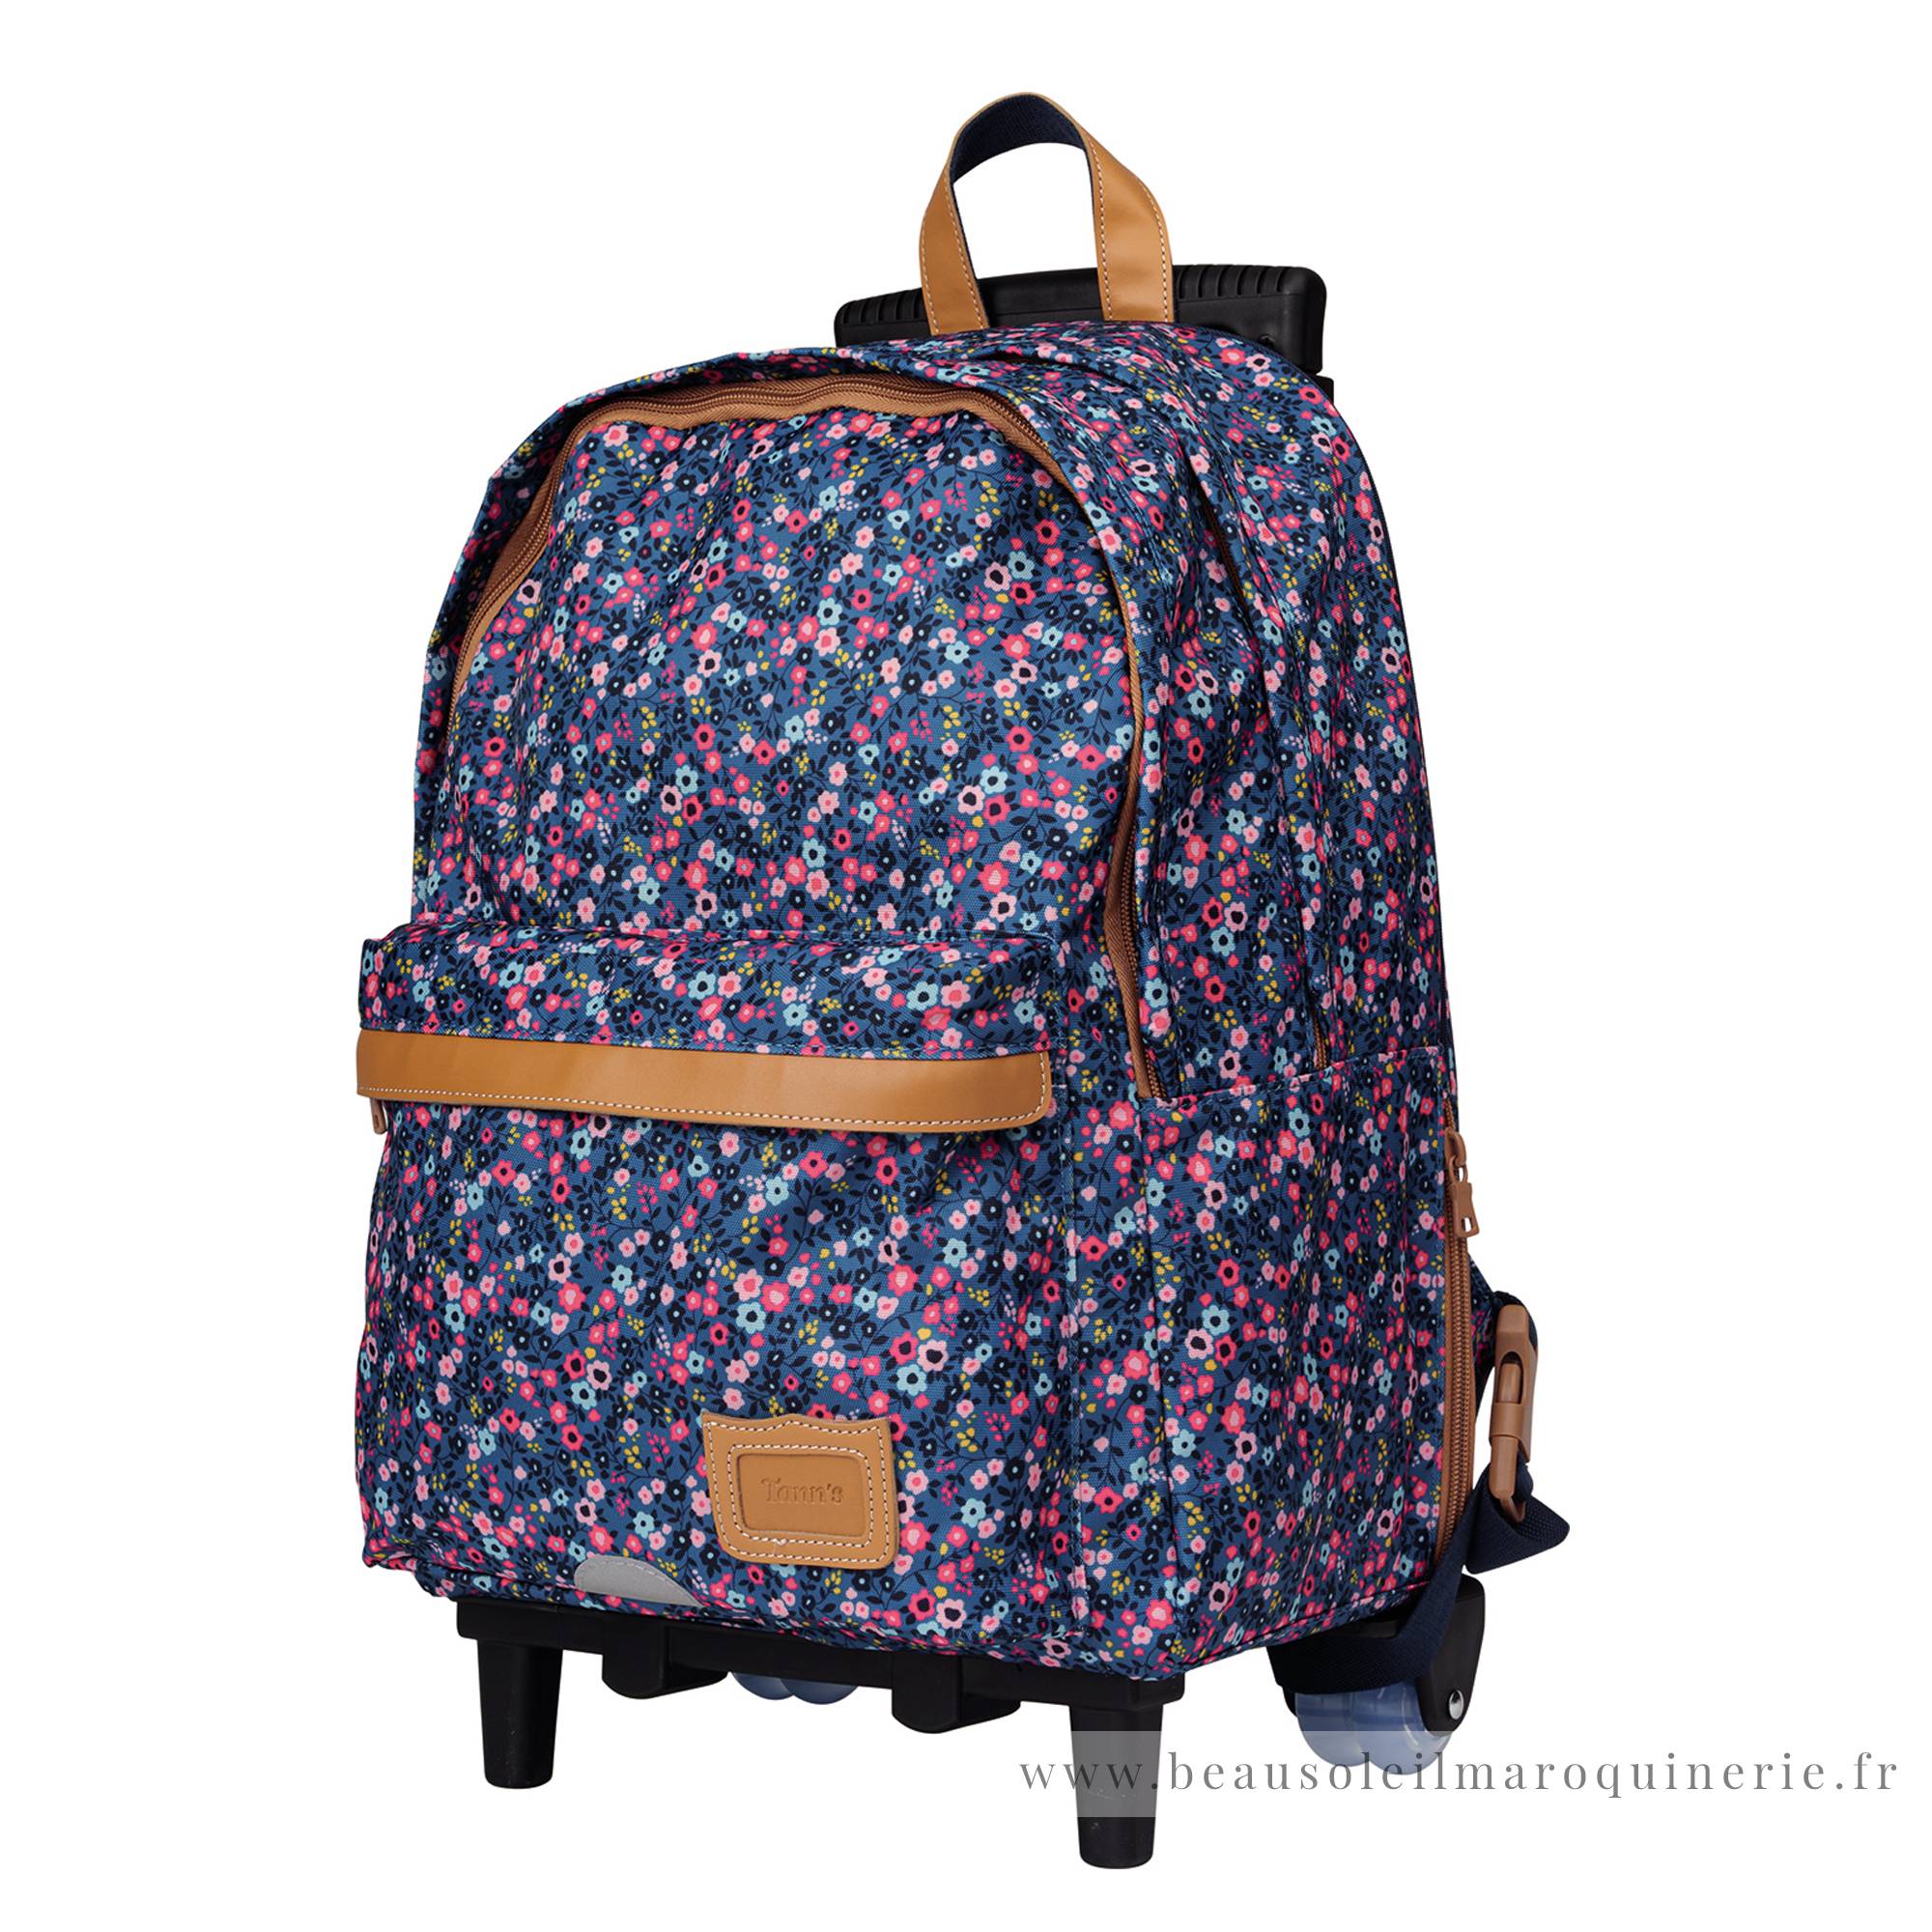 Trolley sac à dos L Tann's Lou Ann motif fleuri 73136 couleur Bleu/Rose, vue de profil